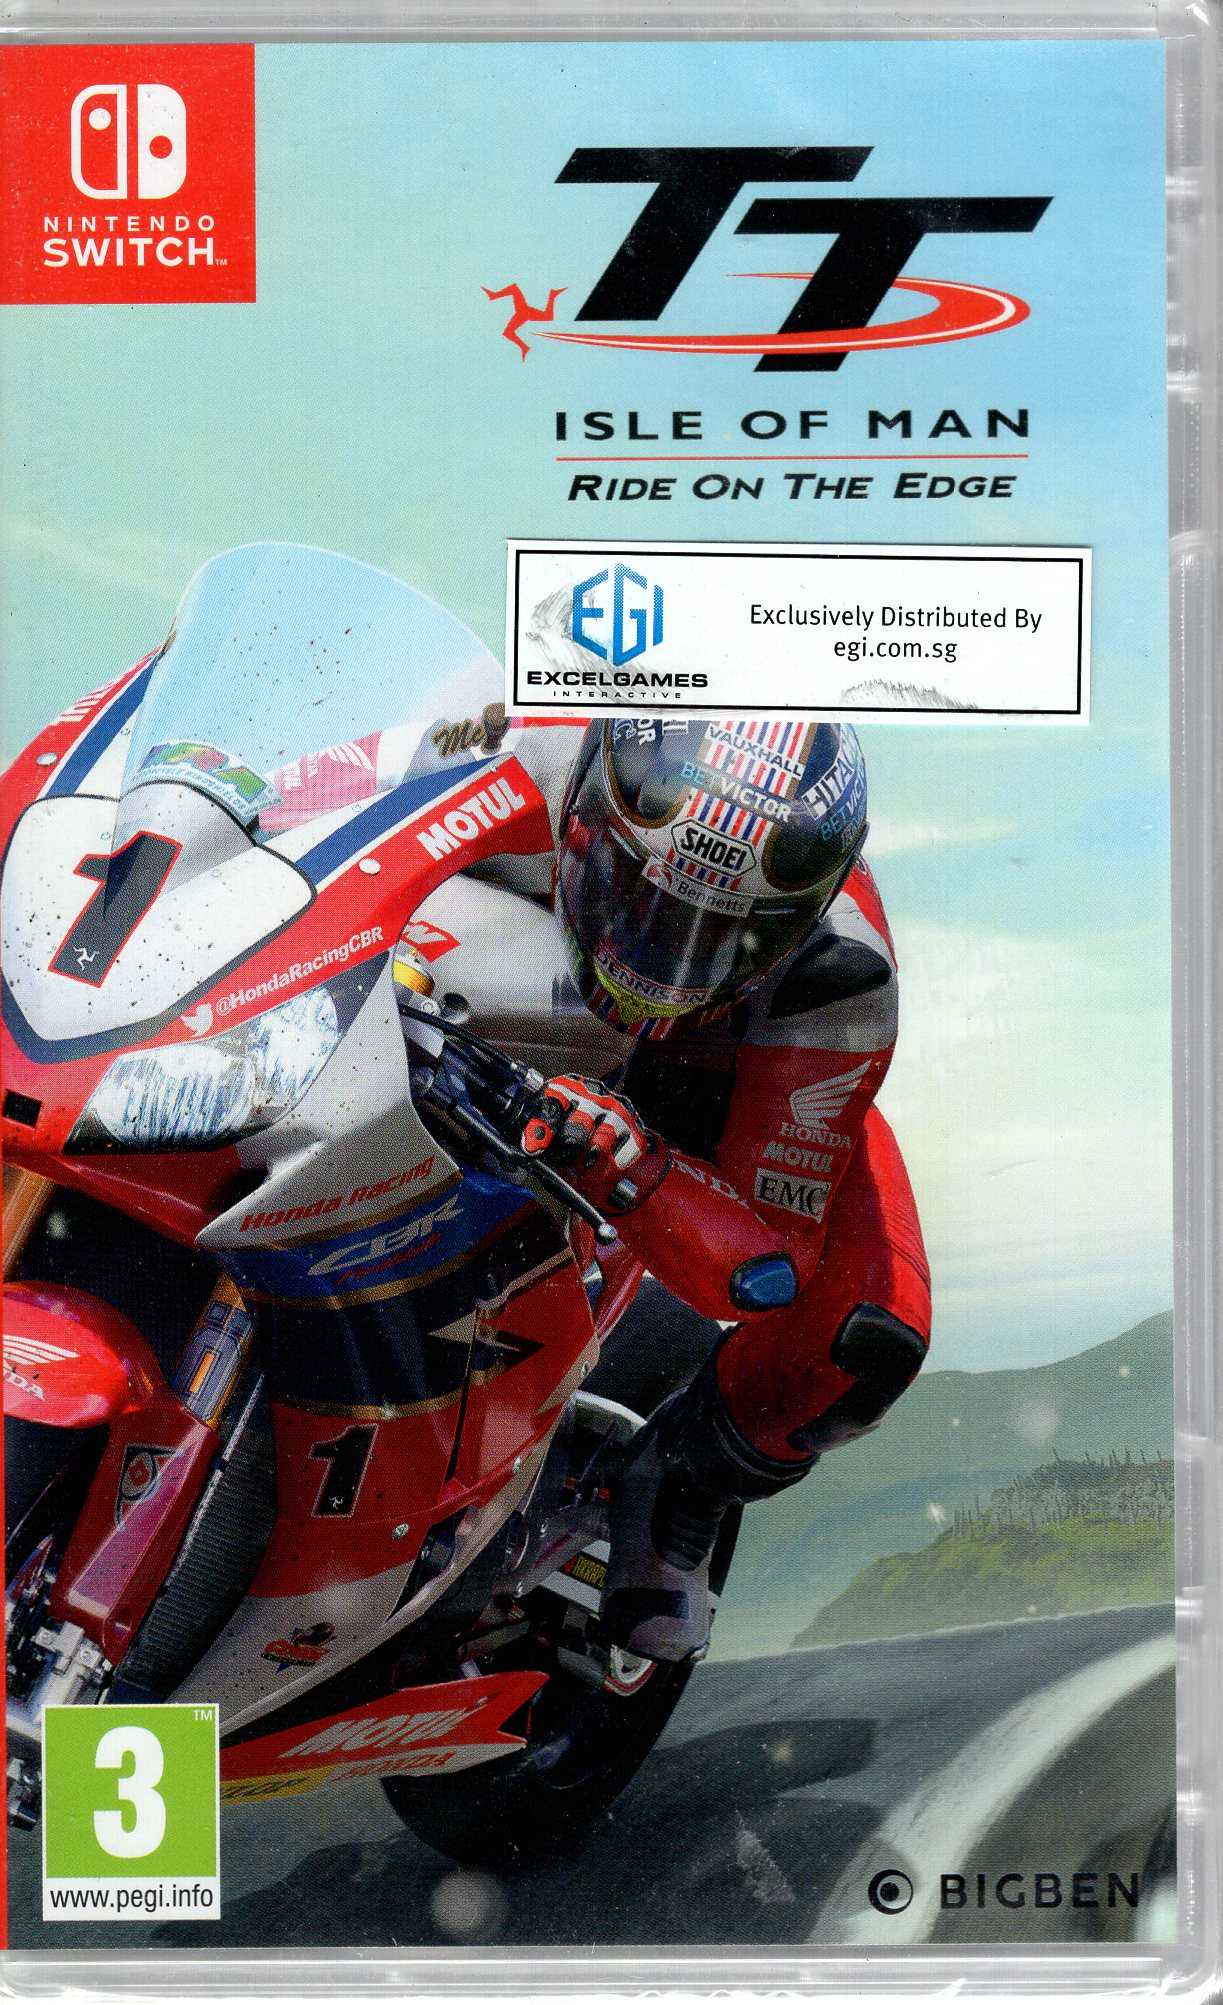 現貨中switch遊戲ns 曼島摩托車賽邊緣競速tt Isle Of Man Ride On Mig電玩 線上購物 有閑購物